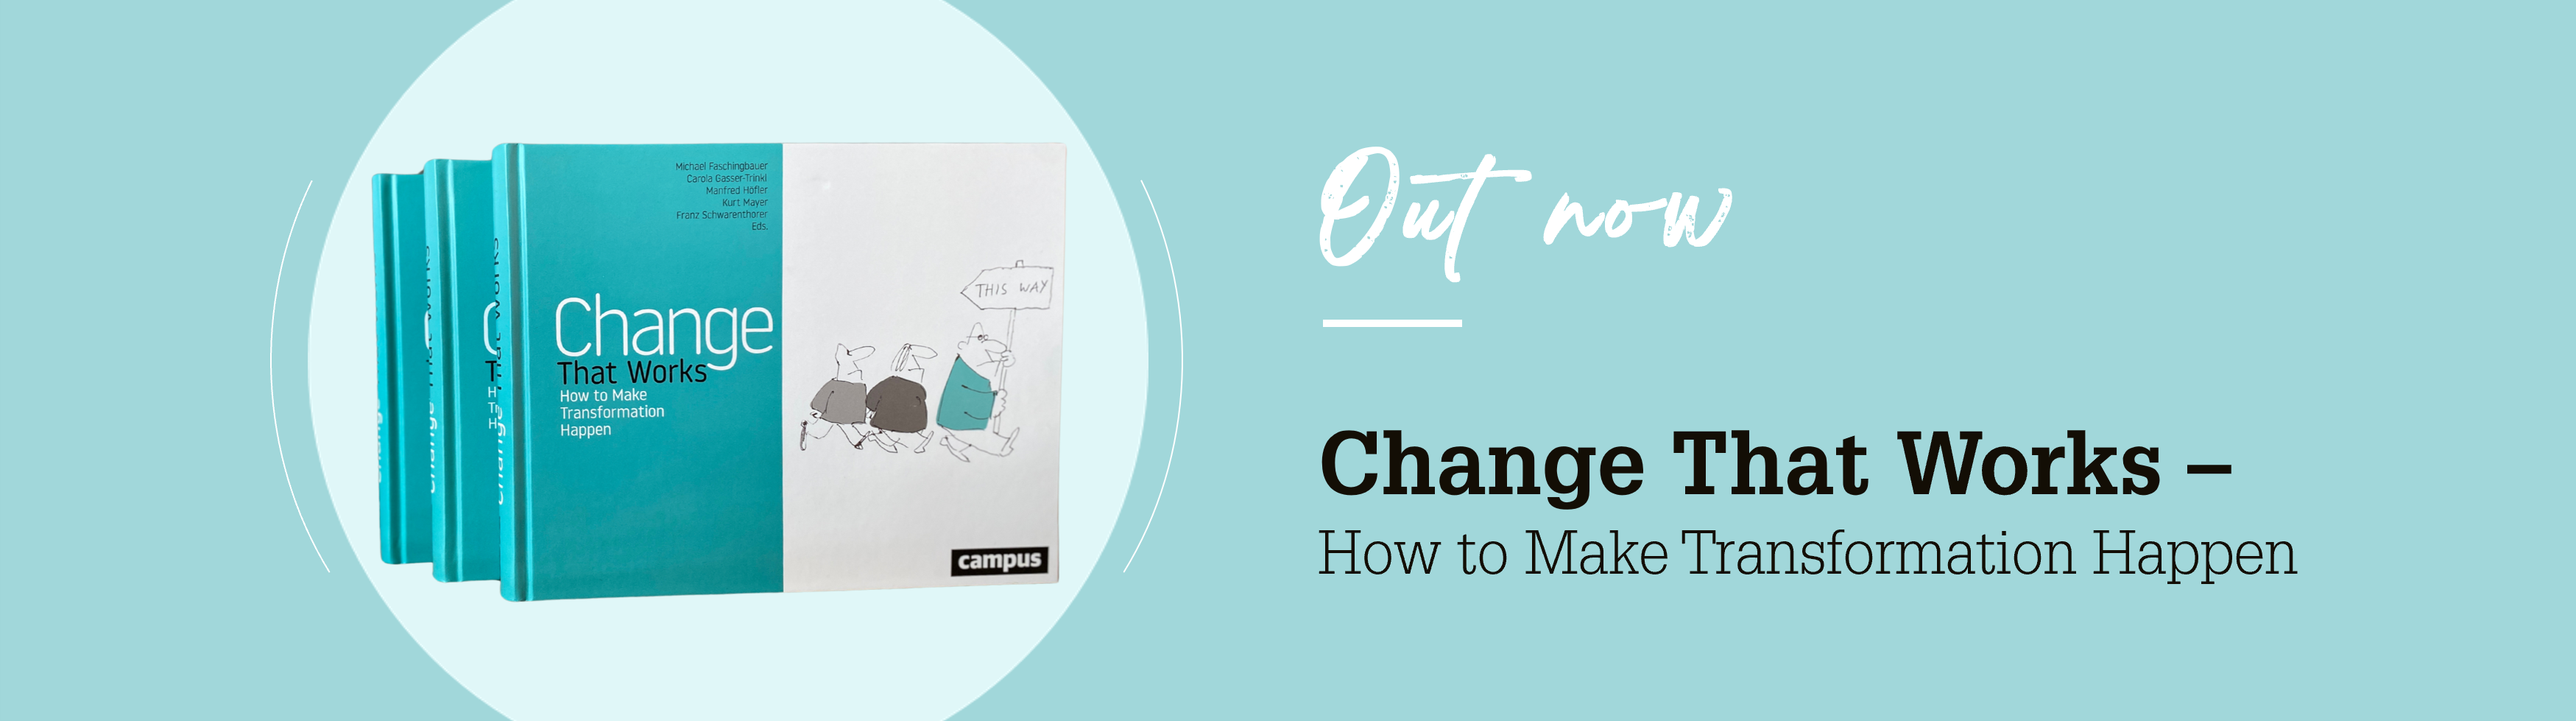 Banner für das Buch Change That Works: Out now